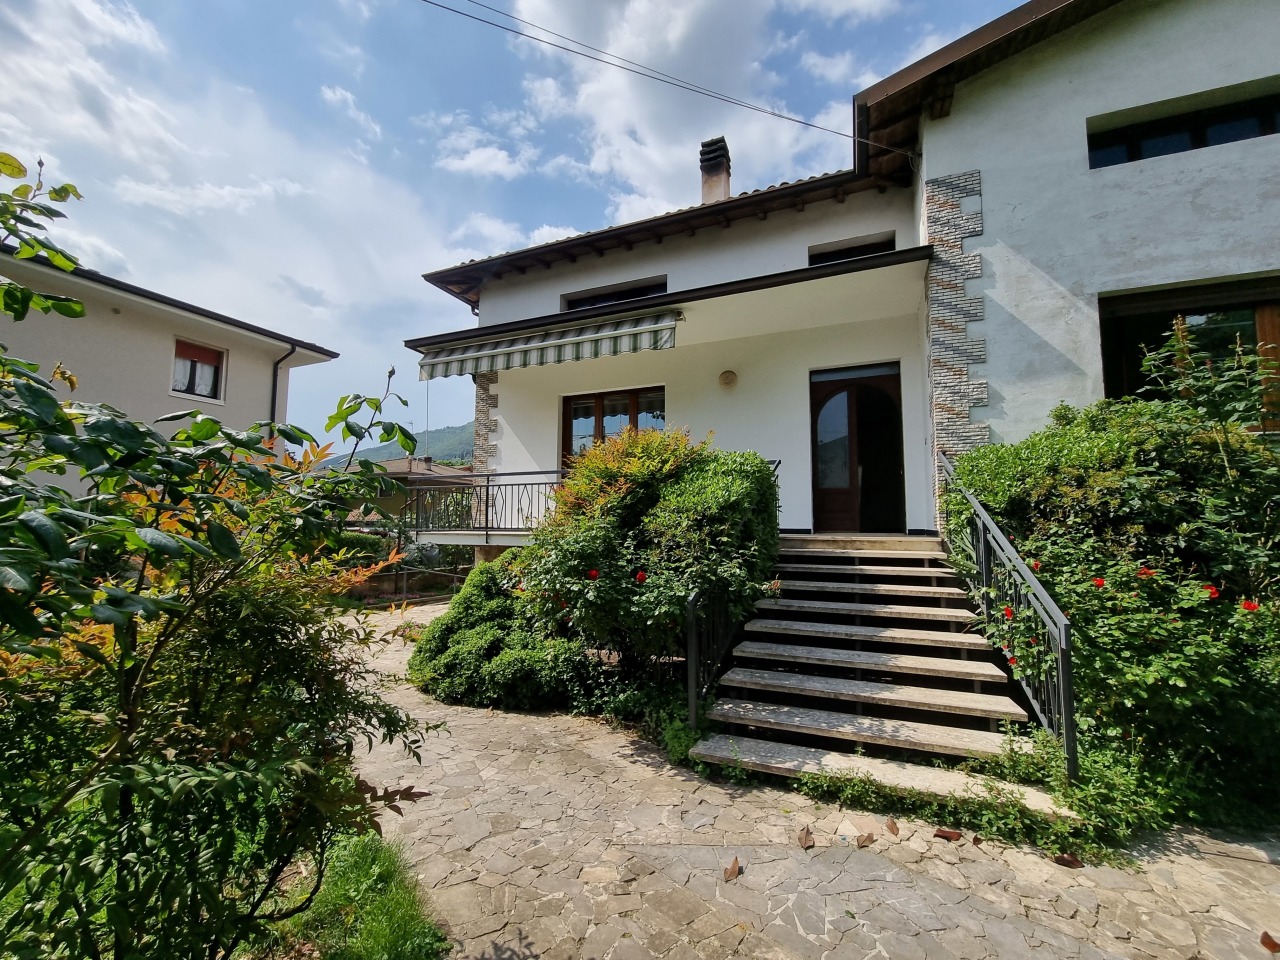 Villa in vendita a Villanuova sul Clisi, 4 locali, prezzo € 323.000 | PortaleAgenzieImmobiliari.it